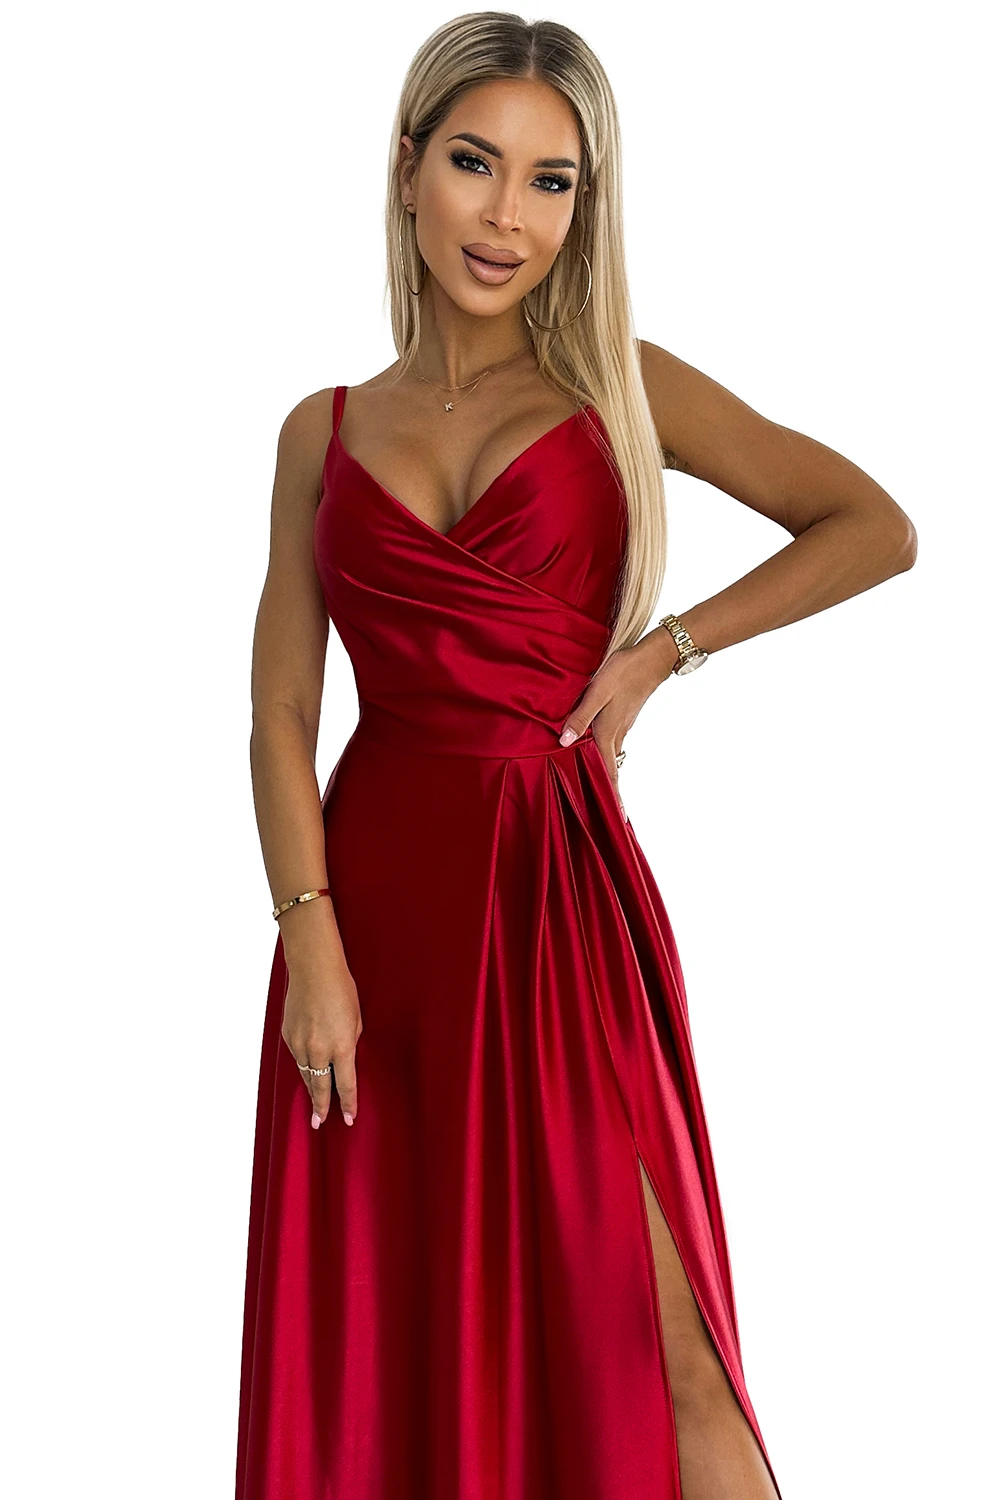 299-14 CHIARA elegancka maxi długa satynowa suknia na ramiączkach - CZERWONA